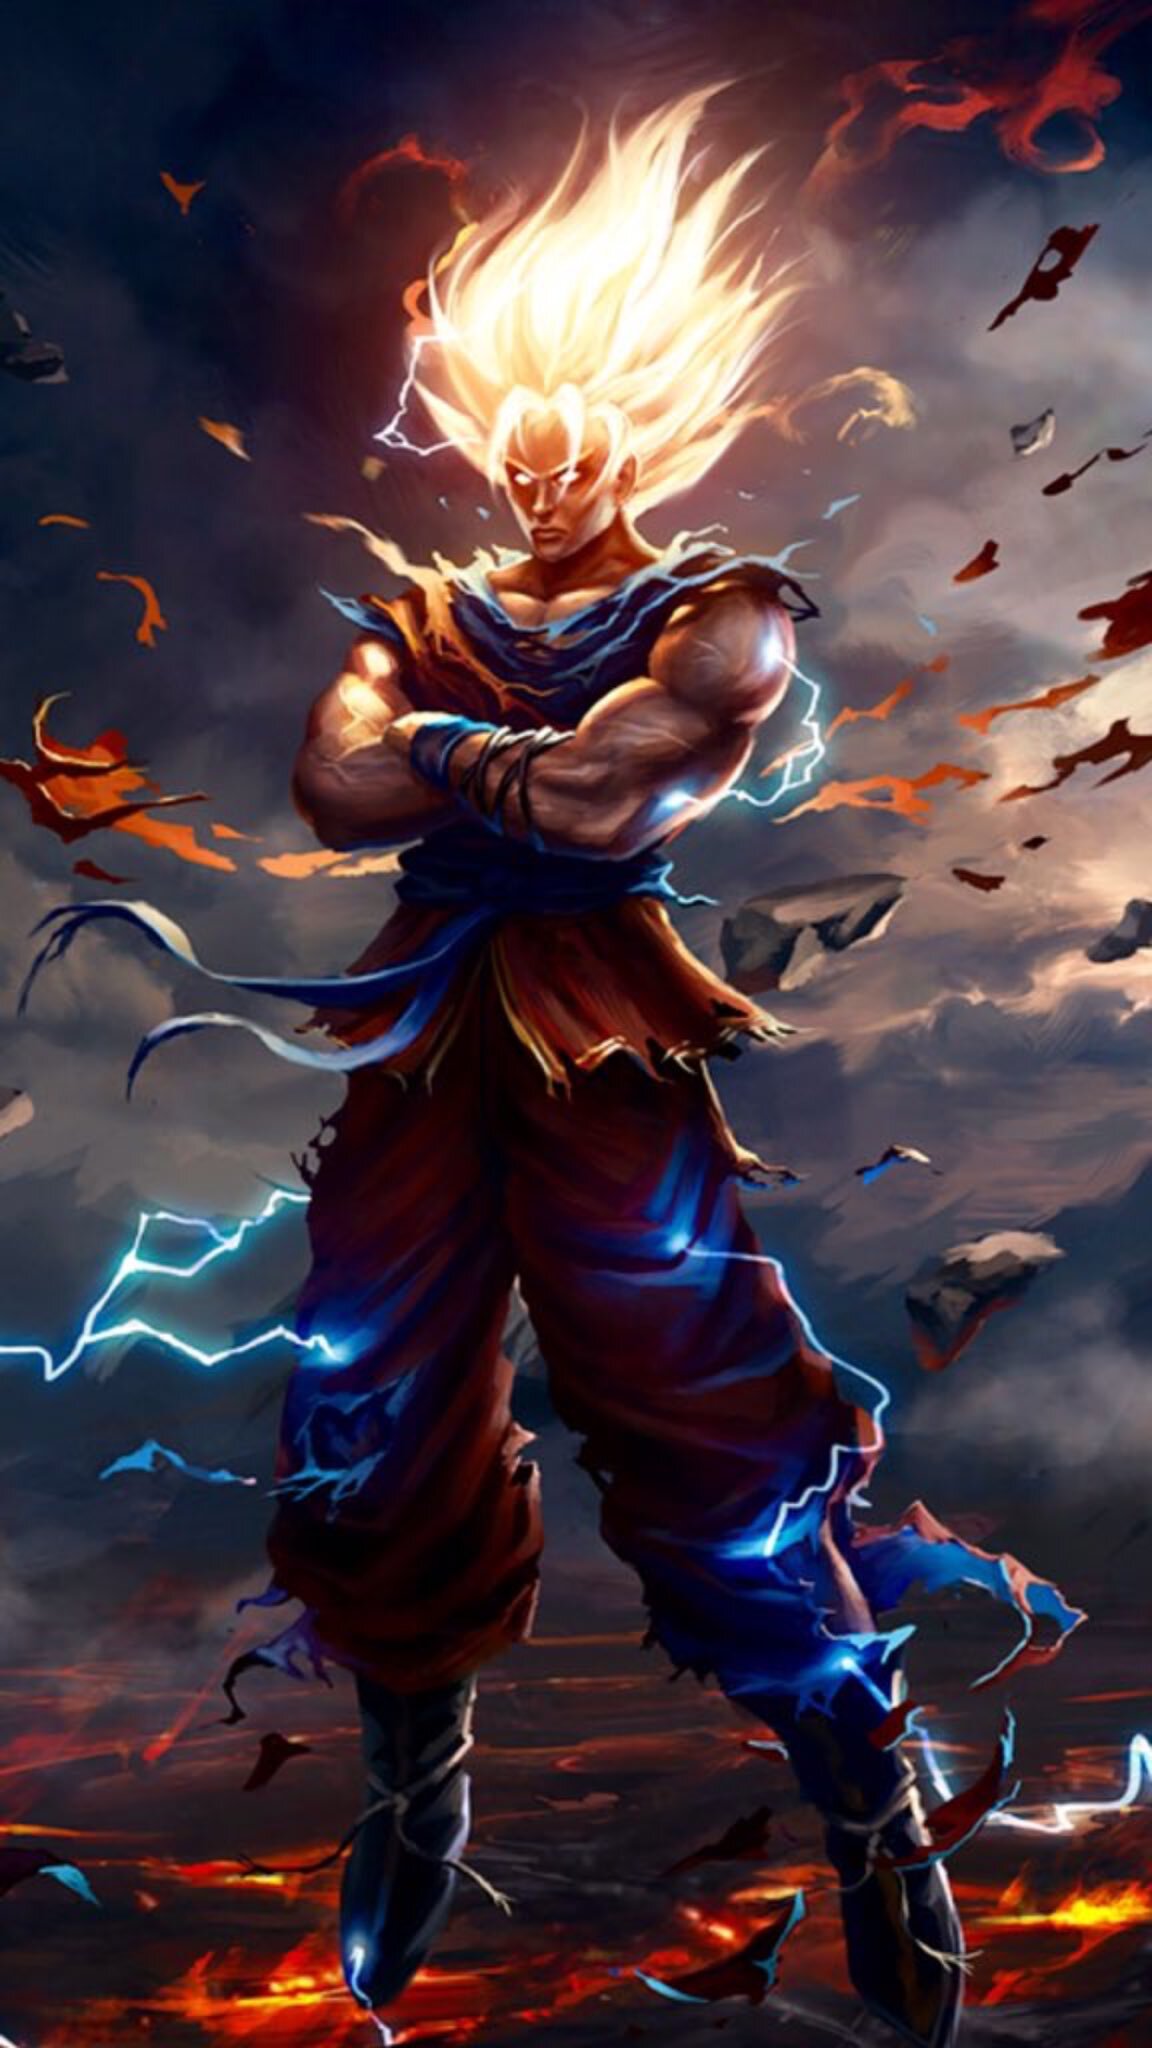 Tải ngay bức ảnh về Bản năng vô cực để nhìn thấy sức mạnh tuyệt đỉnh của Goku khi chiến đấu! Đây là đỉnh cao của bộ tranh Manga. Hãy xem hình ảnh chất lượng cao nhất và cùng trải nghiệm!